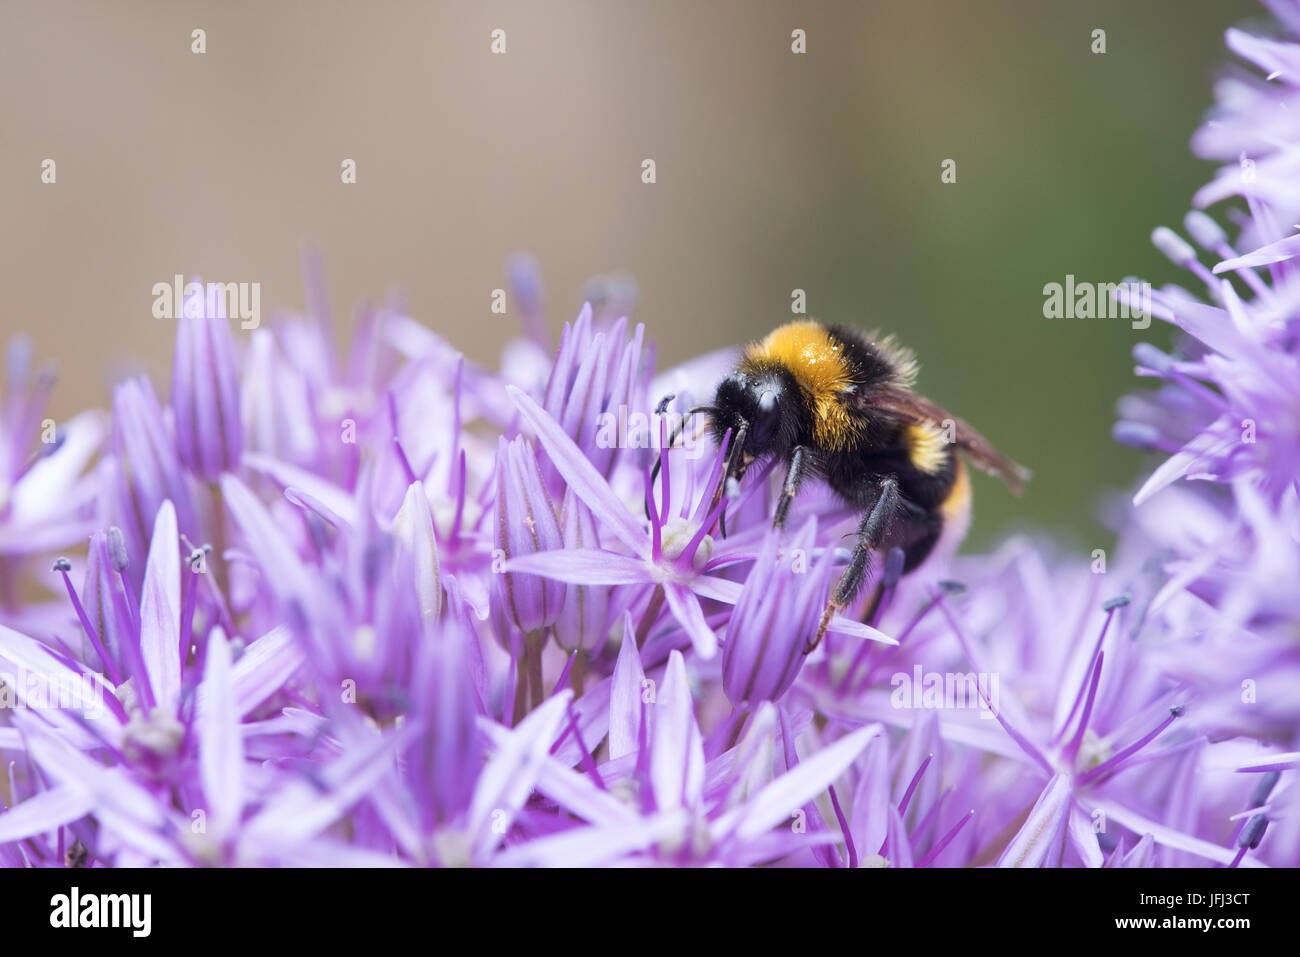 Bombus lucorum. White-tailed bumblebee feeding on Allium flower in an english garden. UK Stock Photo